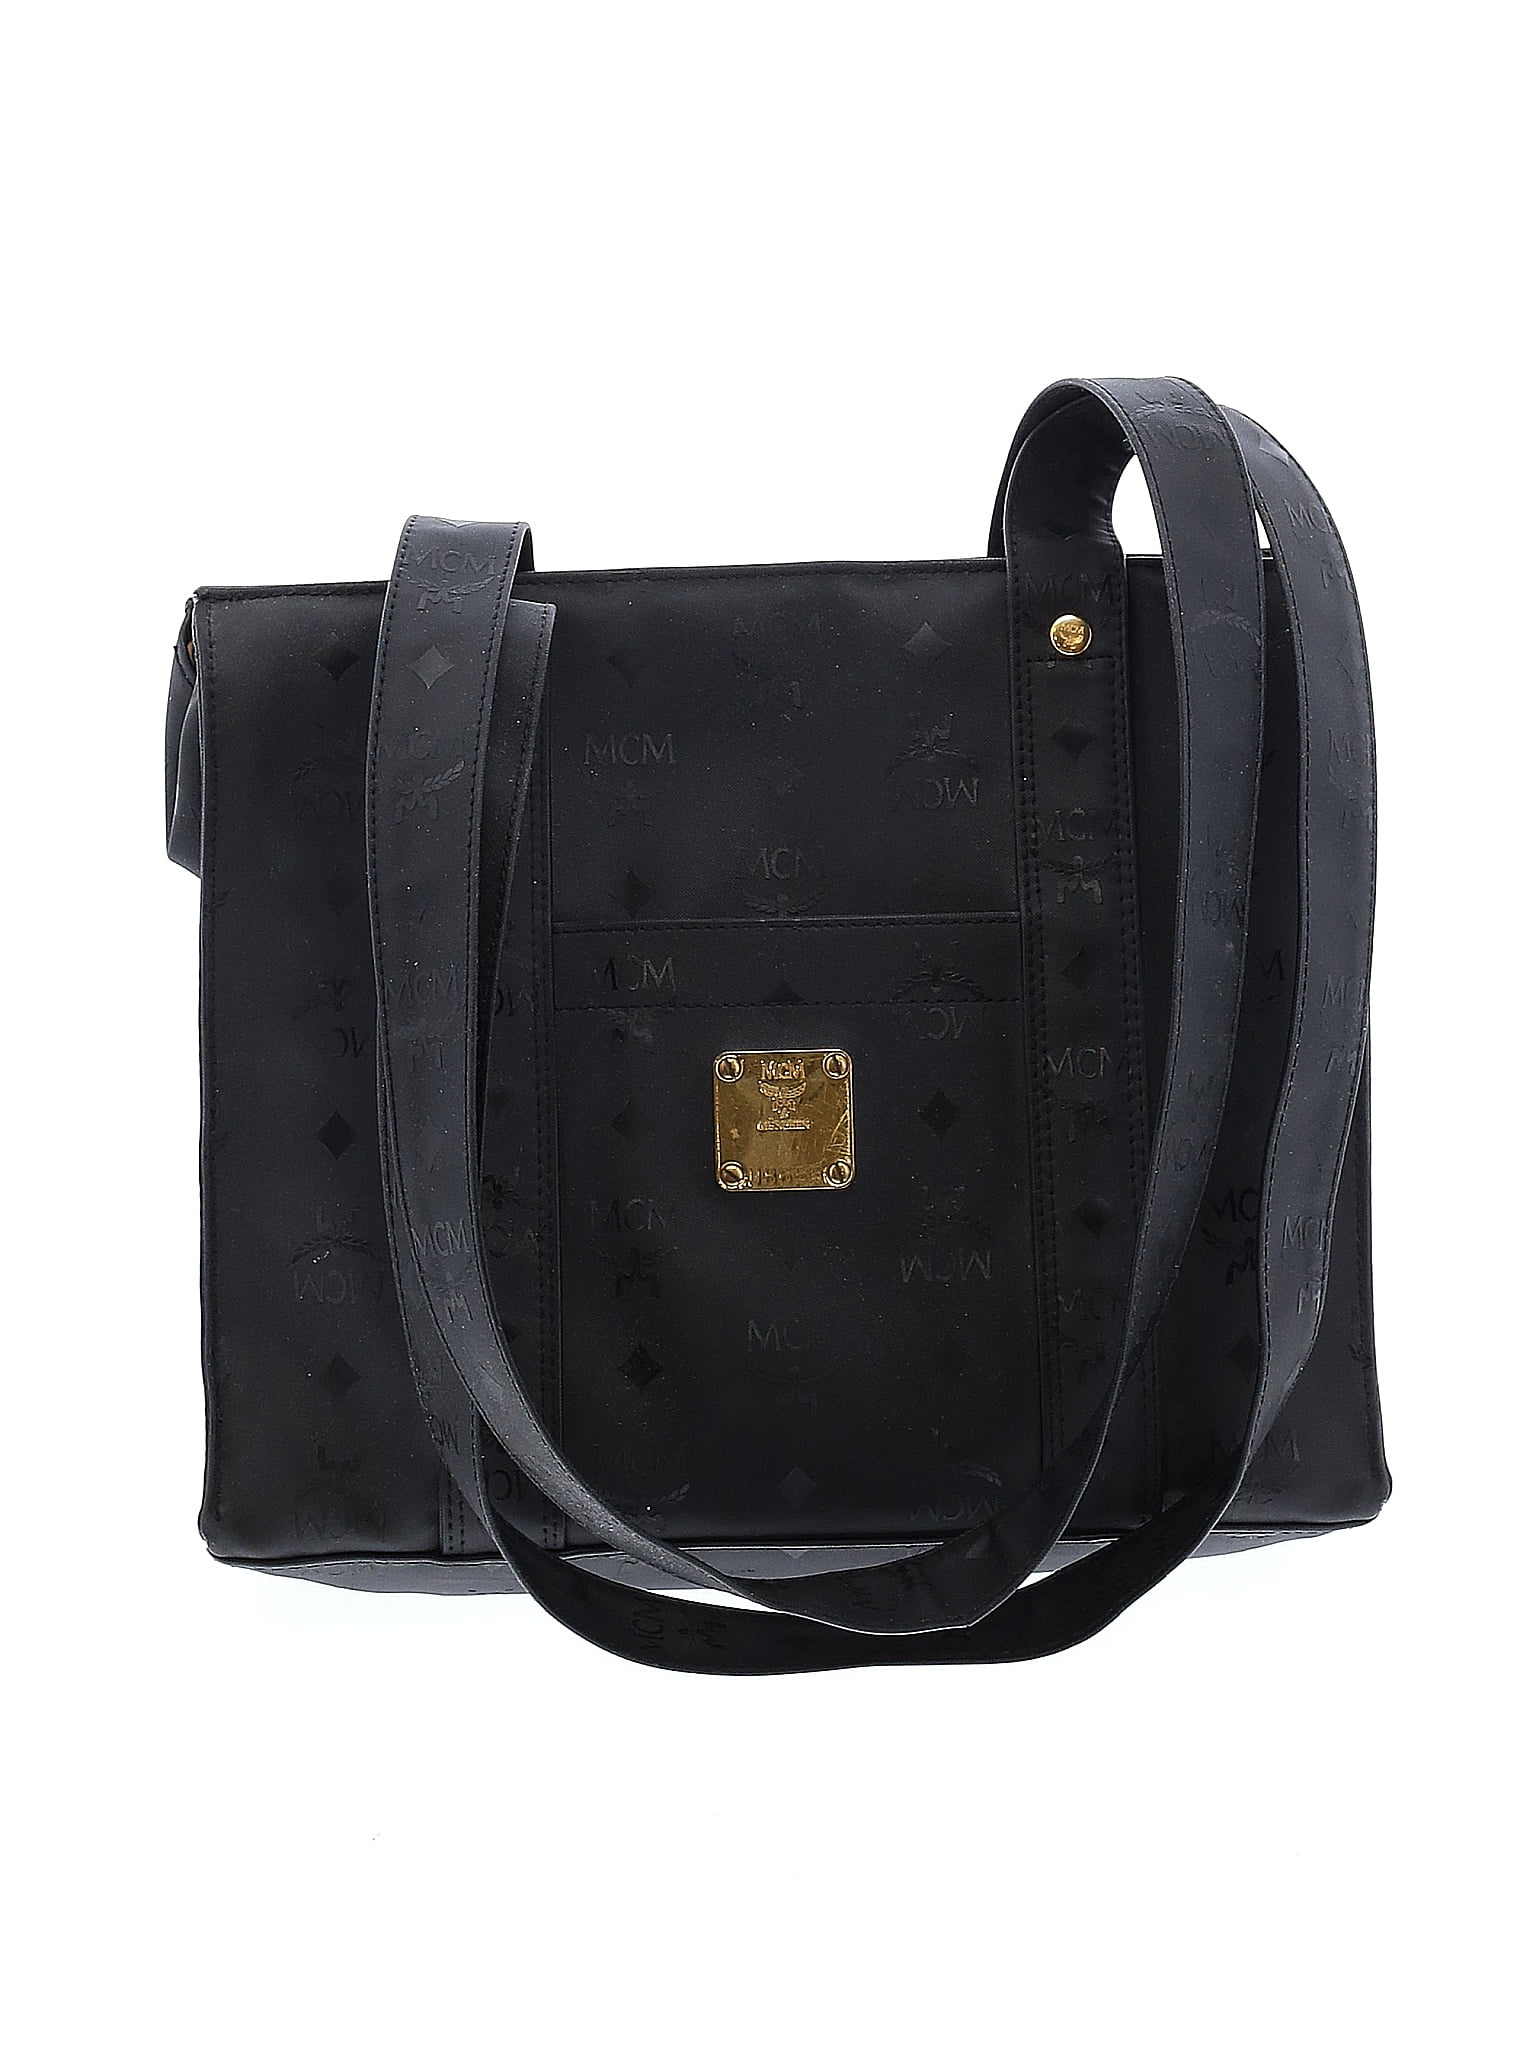 MCM Black Shoulder Bag One Size - 80% off